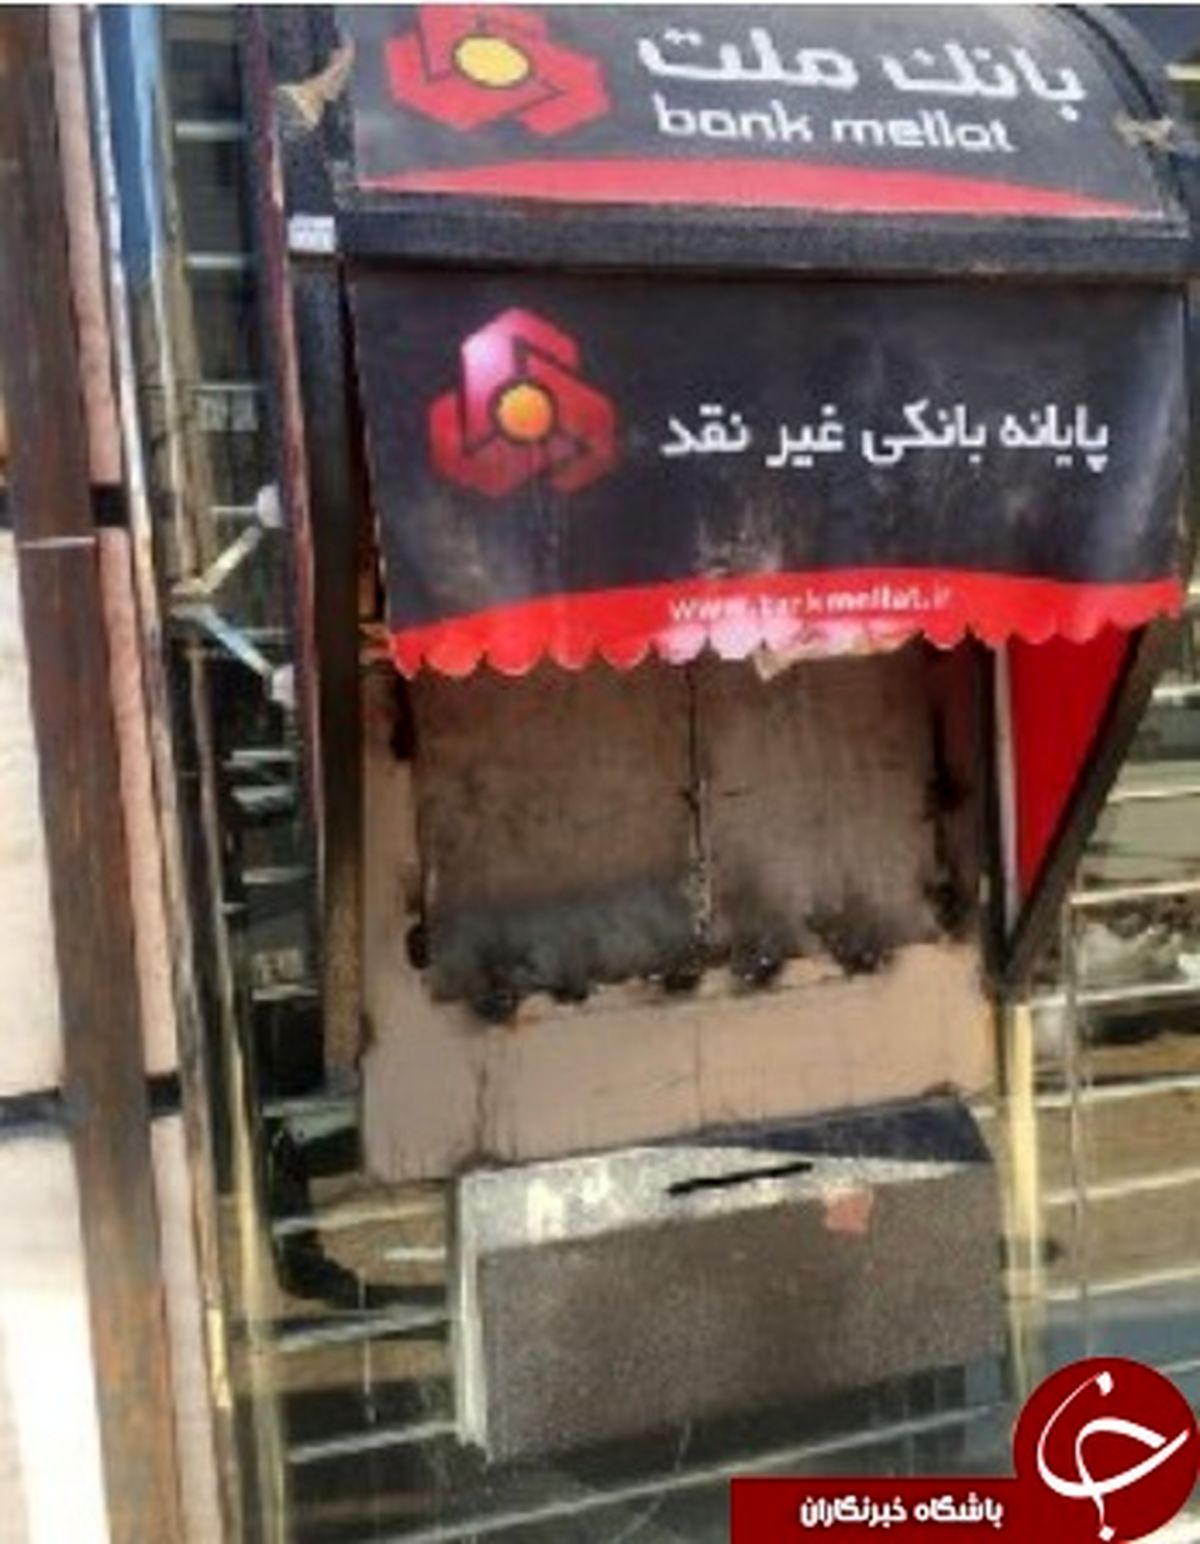 وضعیت بانک ها در شهر حمیدیه+تصاویر